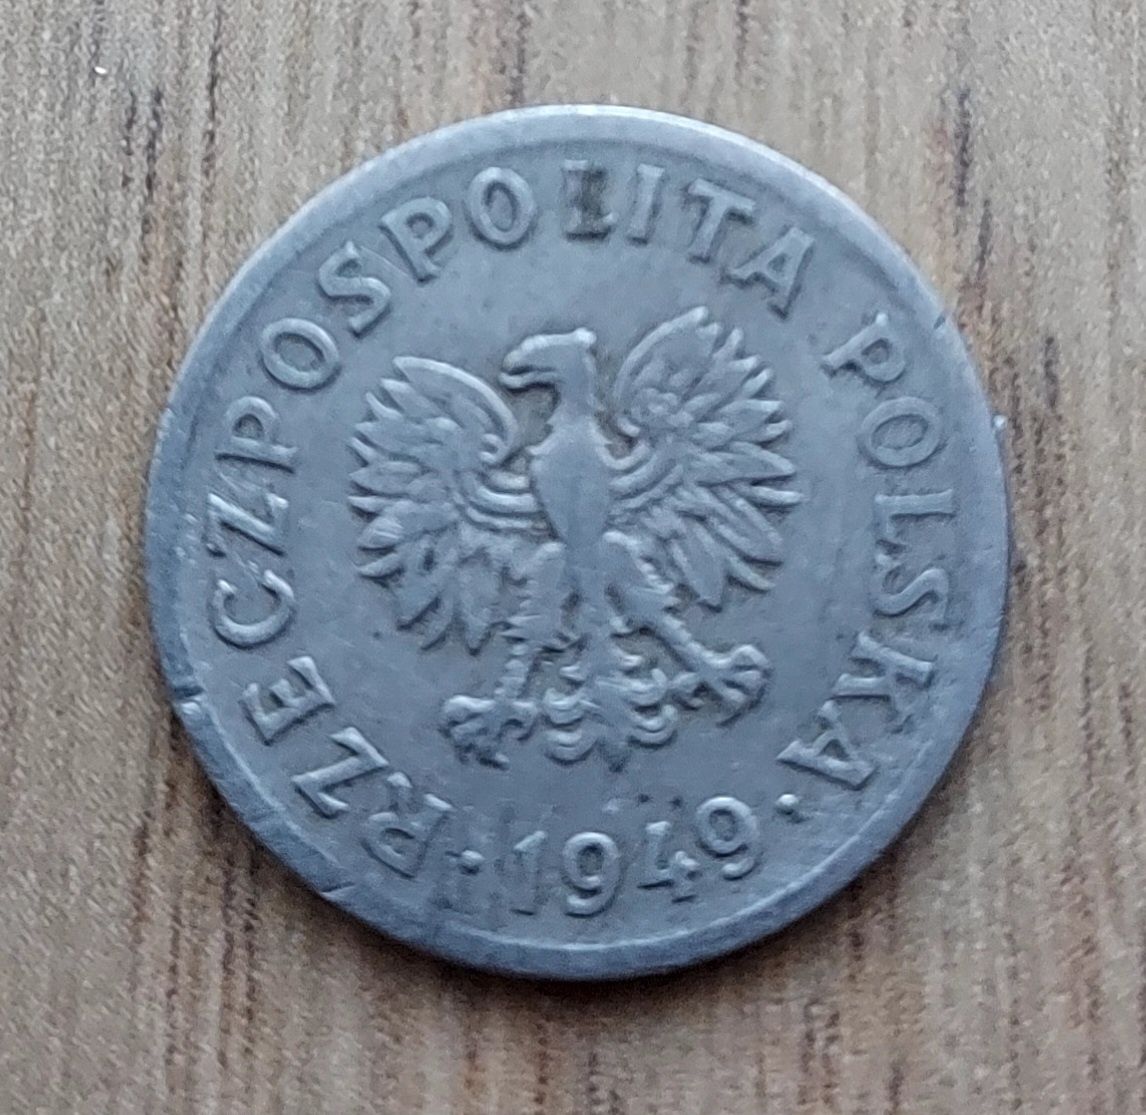 10 groszy 1949 r. Polska miedzionikiel